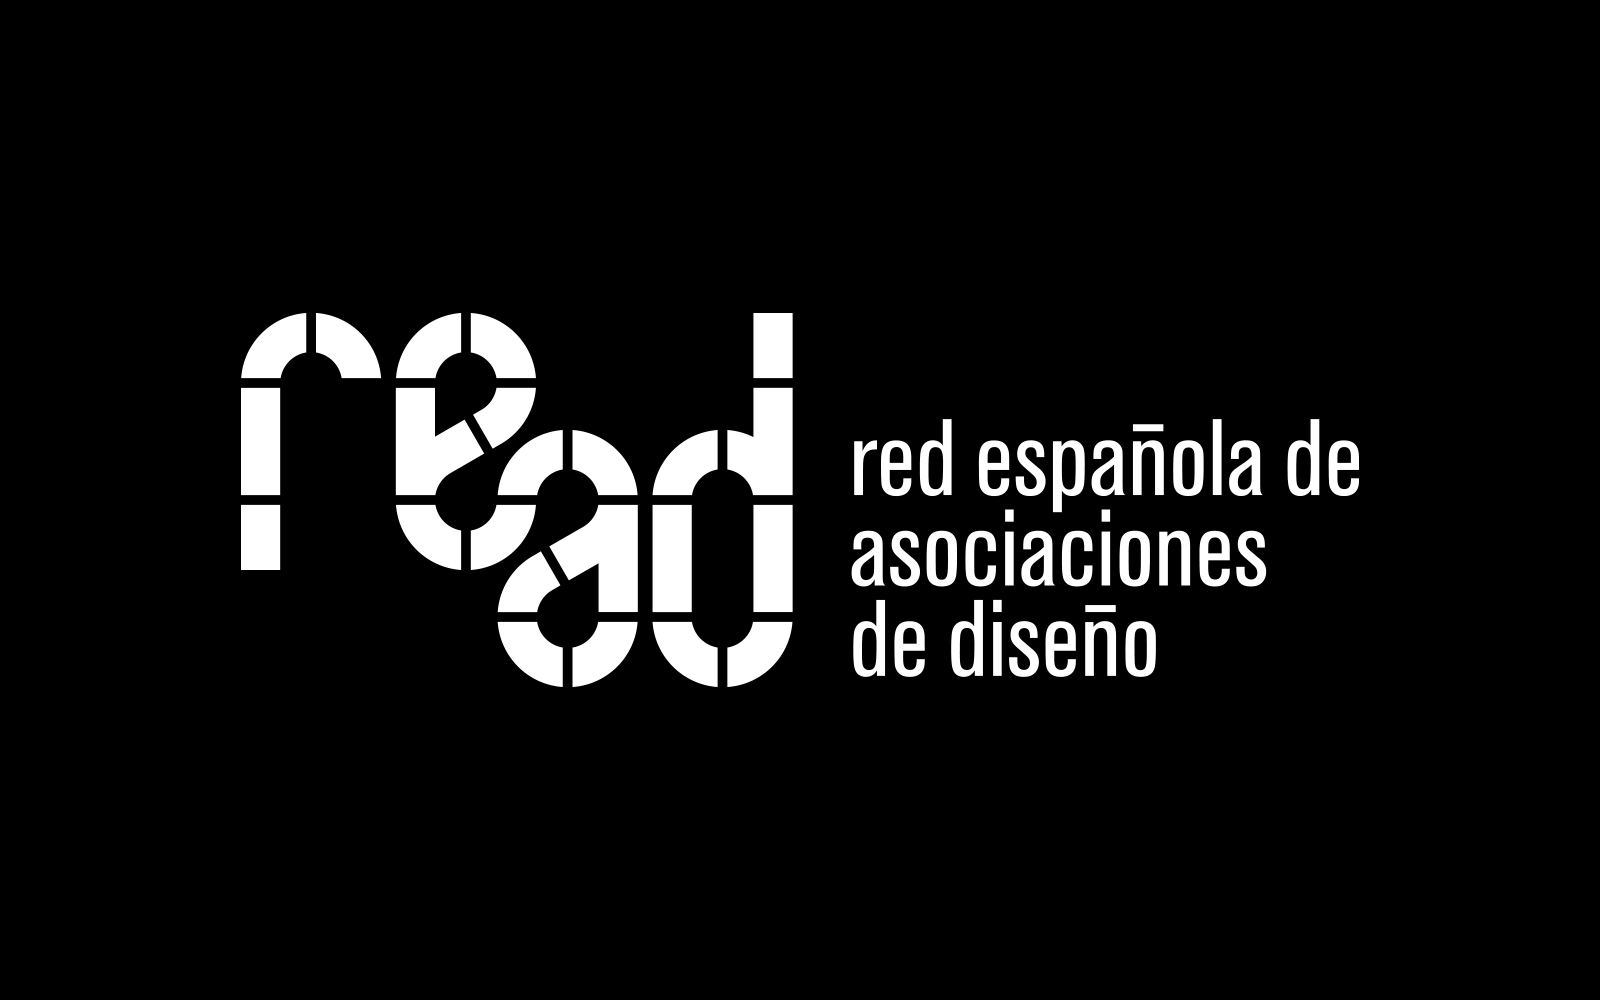 Versión en negativo del logotipo diseñado para la Red Española de Asociaciones de Diseño